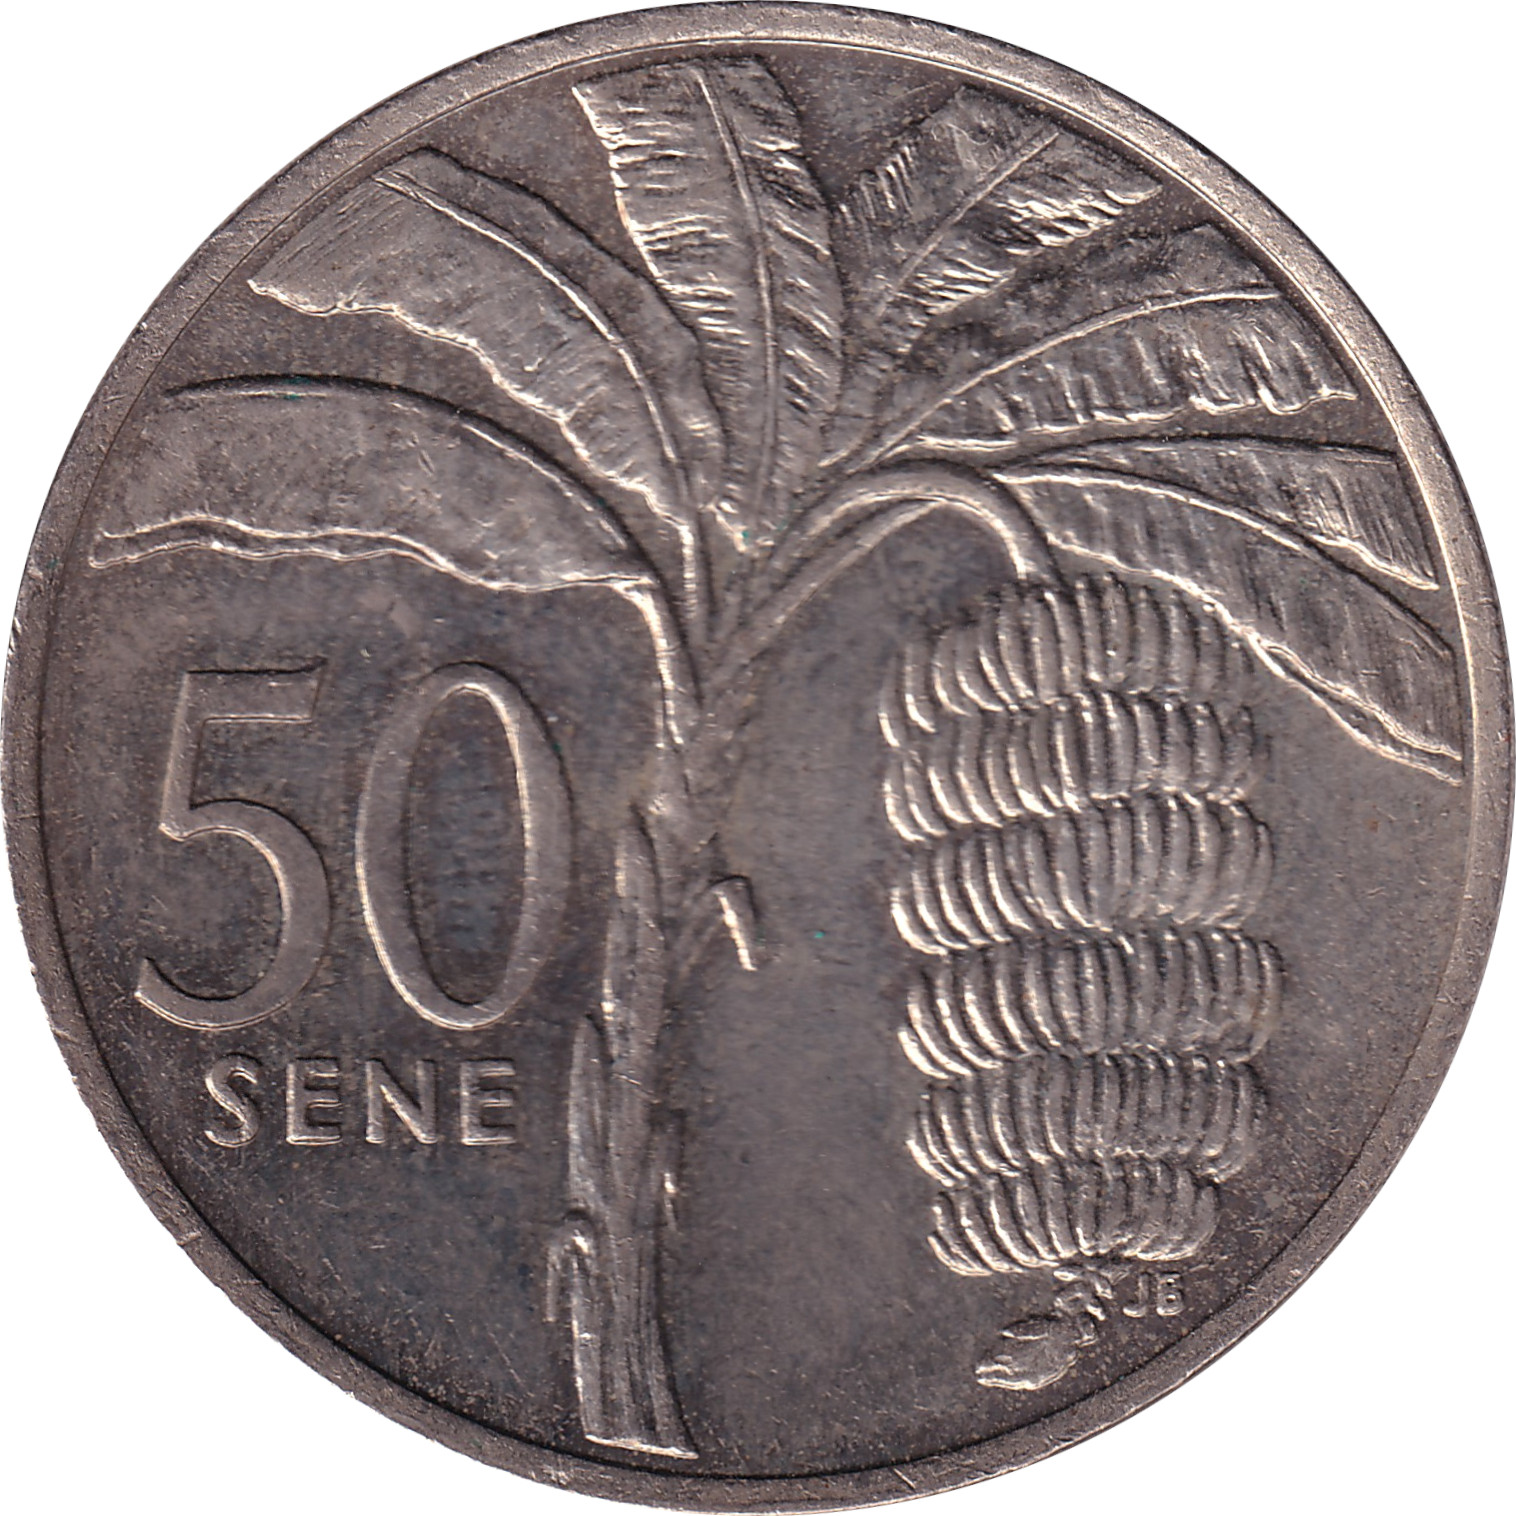 50 sene - Malietoa Tanumafi II - Bananier